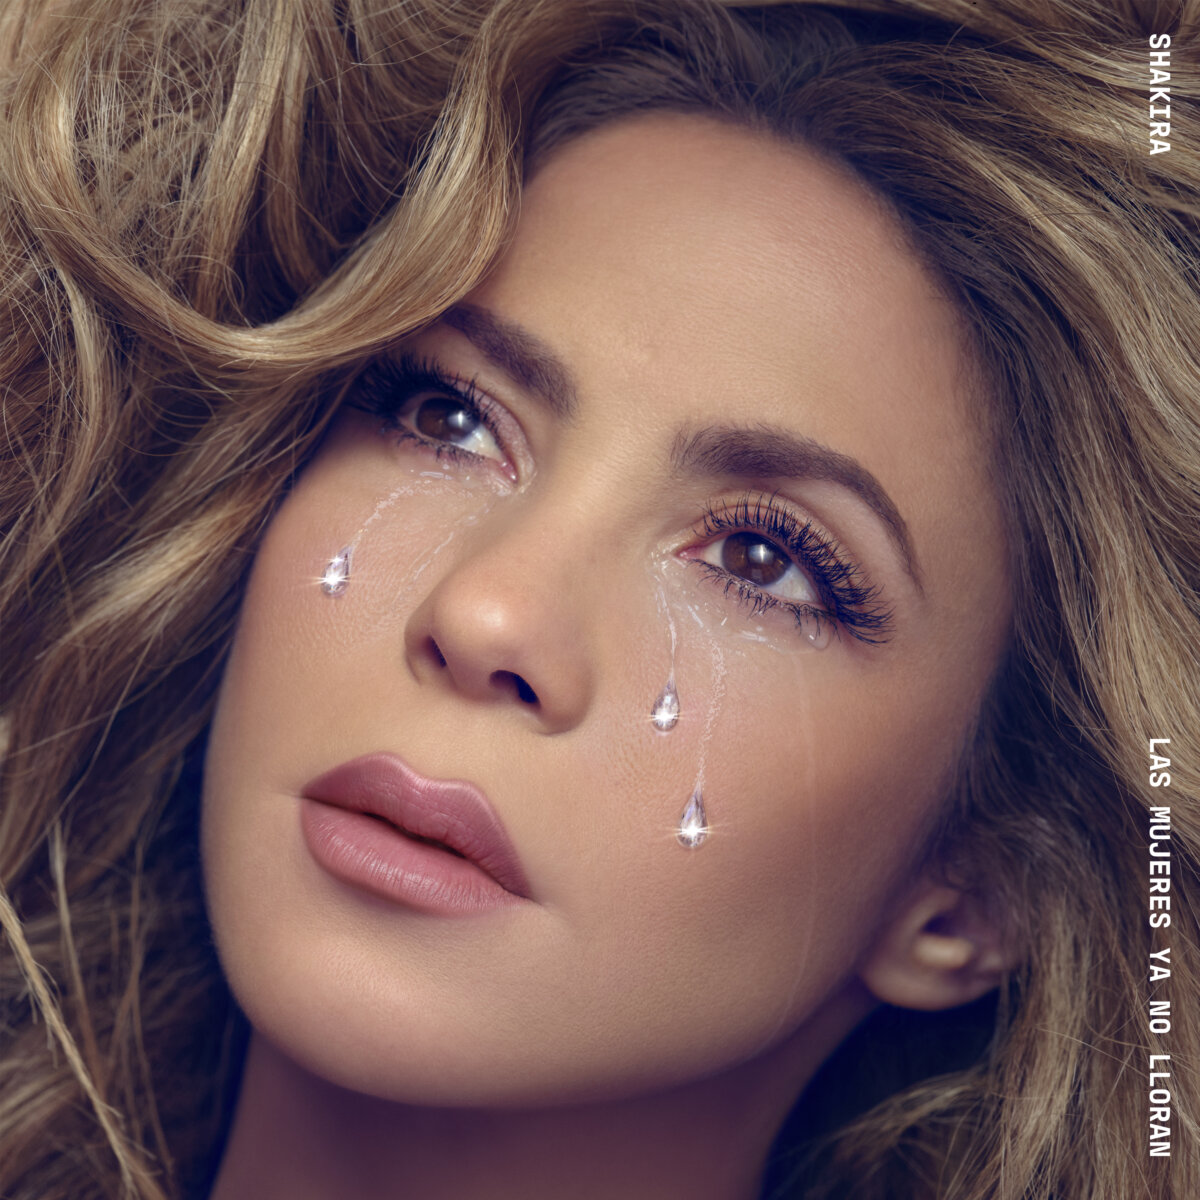 'Las mujeres ya no lloran': Shakira anuncia nuevo álbum Shakira ha emocionado a sus fans tras anunciar su nuevo álbum 'Las mujeres ya no lloran', que estará disponible a partir del 22 de marzo. Será el duodécimo disco de estudio de su exitosa carrera.